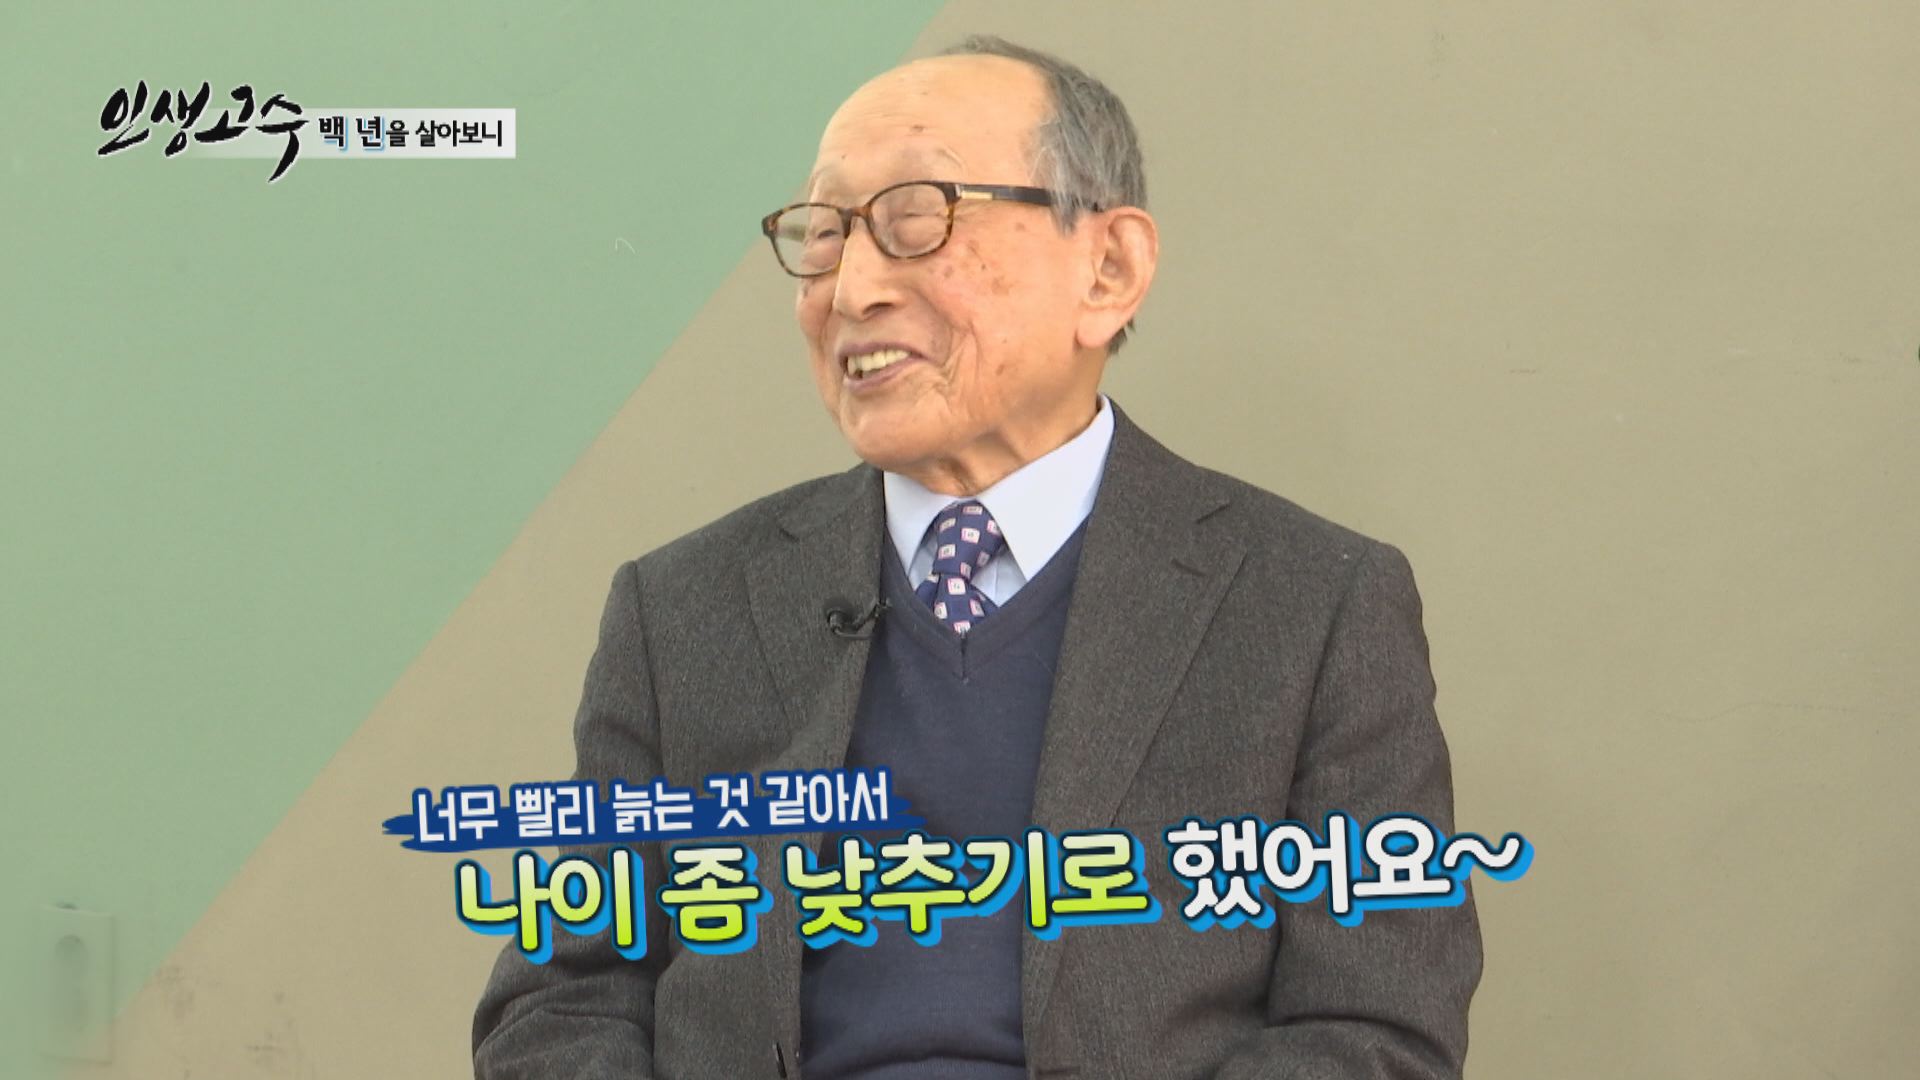 100세 철학자 김형석이 말하는 행복의 비결